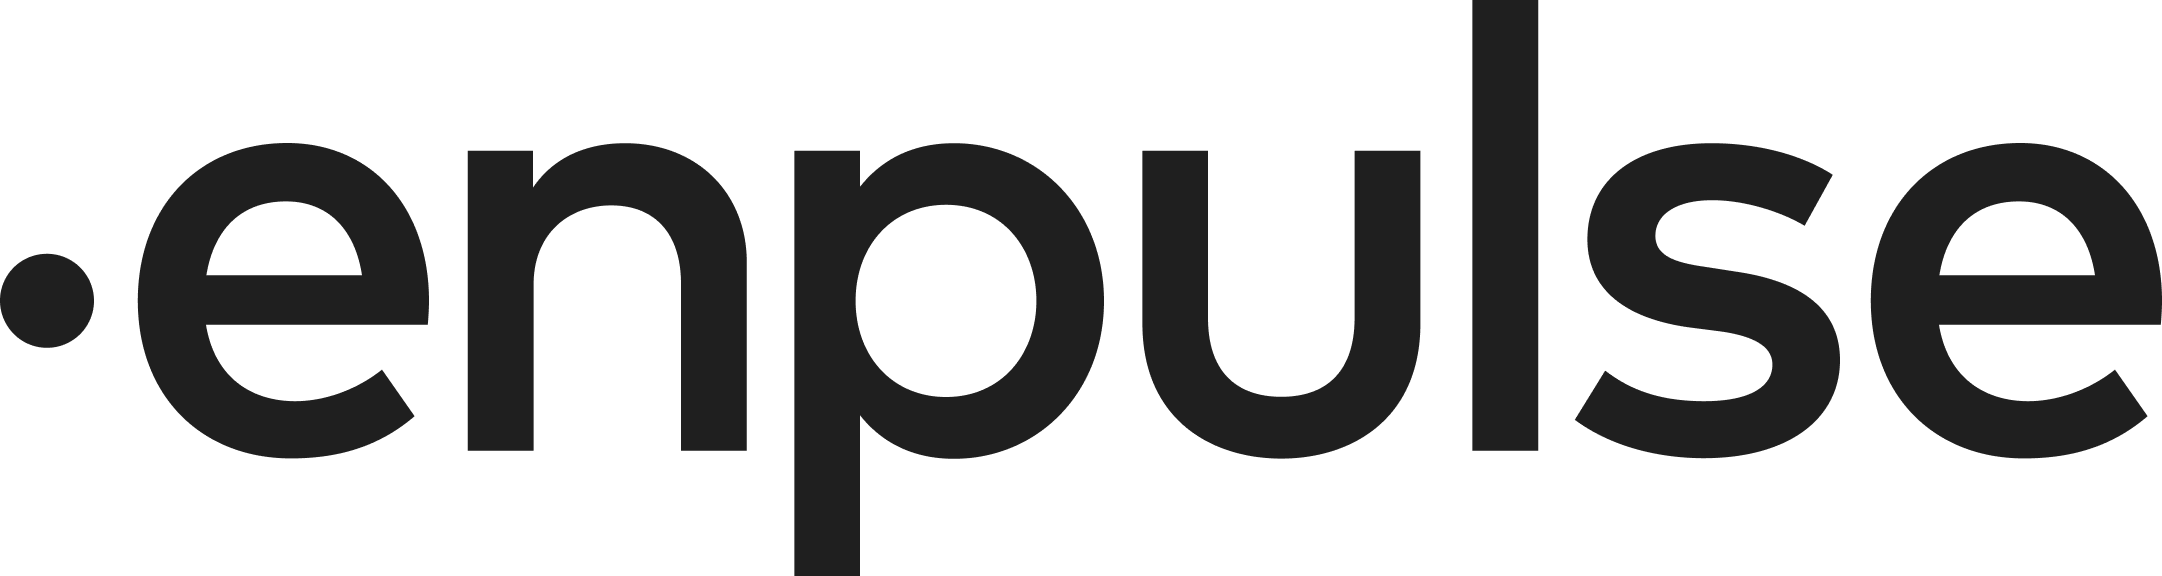 enpulse-challenge's provider logo